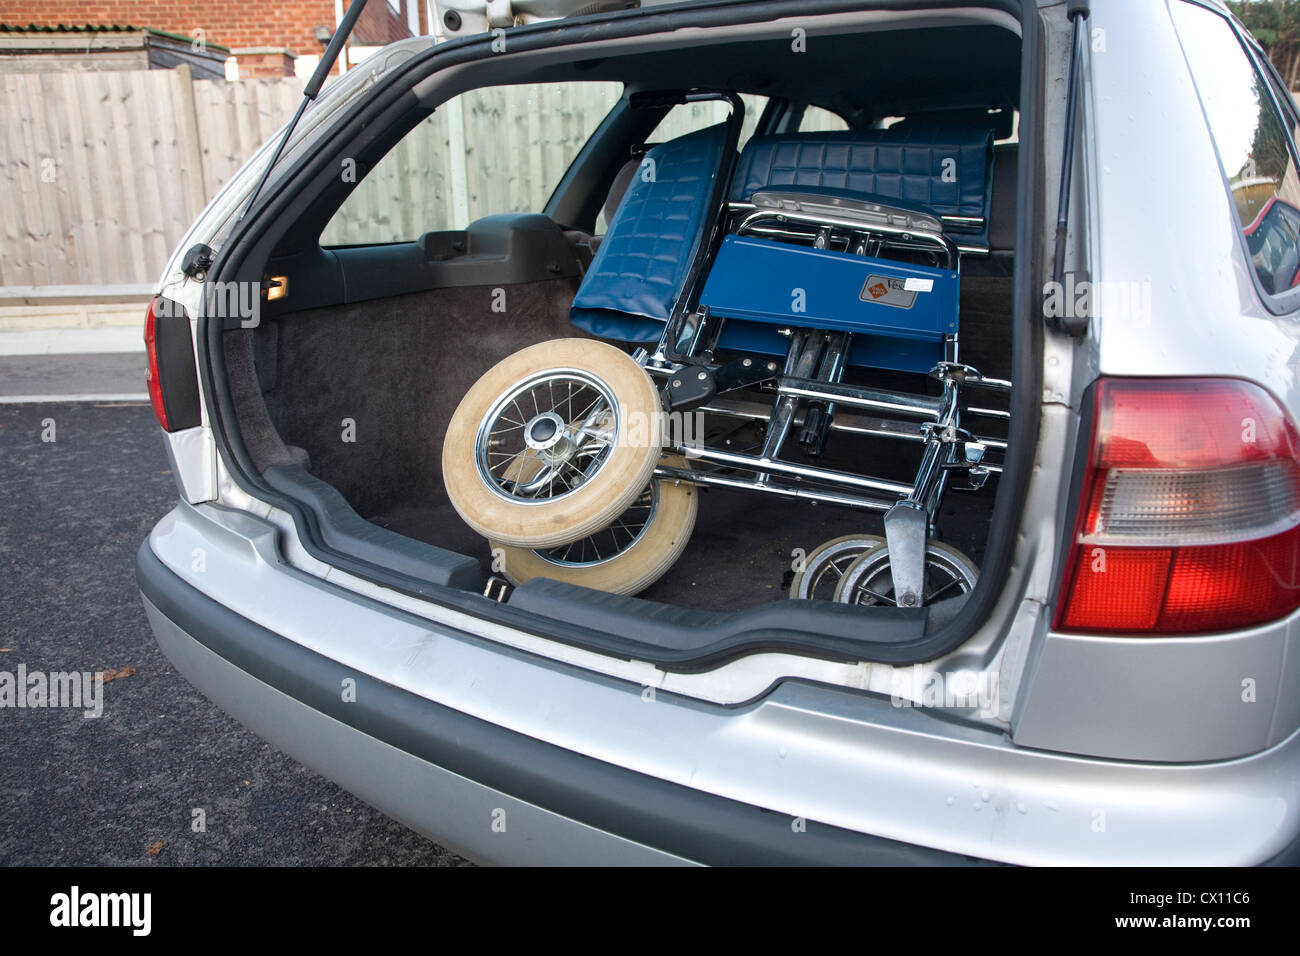 gefaltete Rollstuhl im Kofferraum des Autos Stockfotografie - Alamy